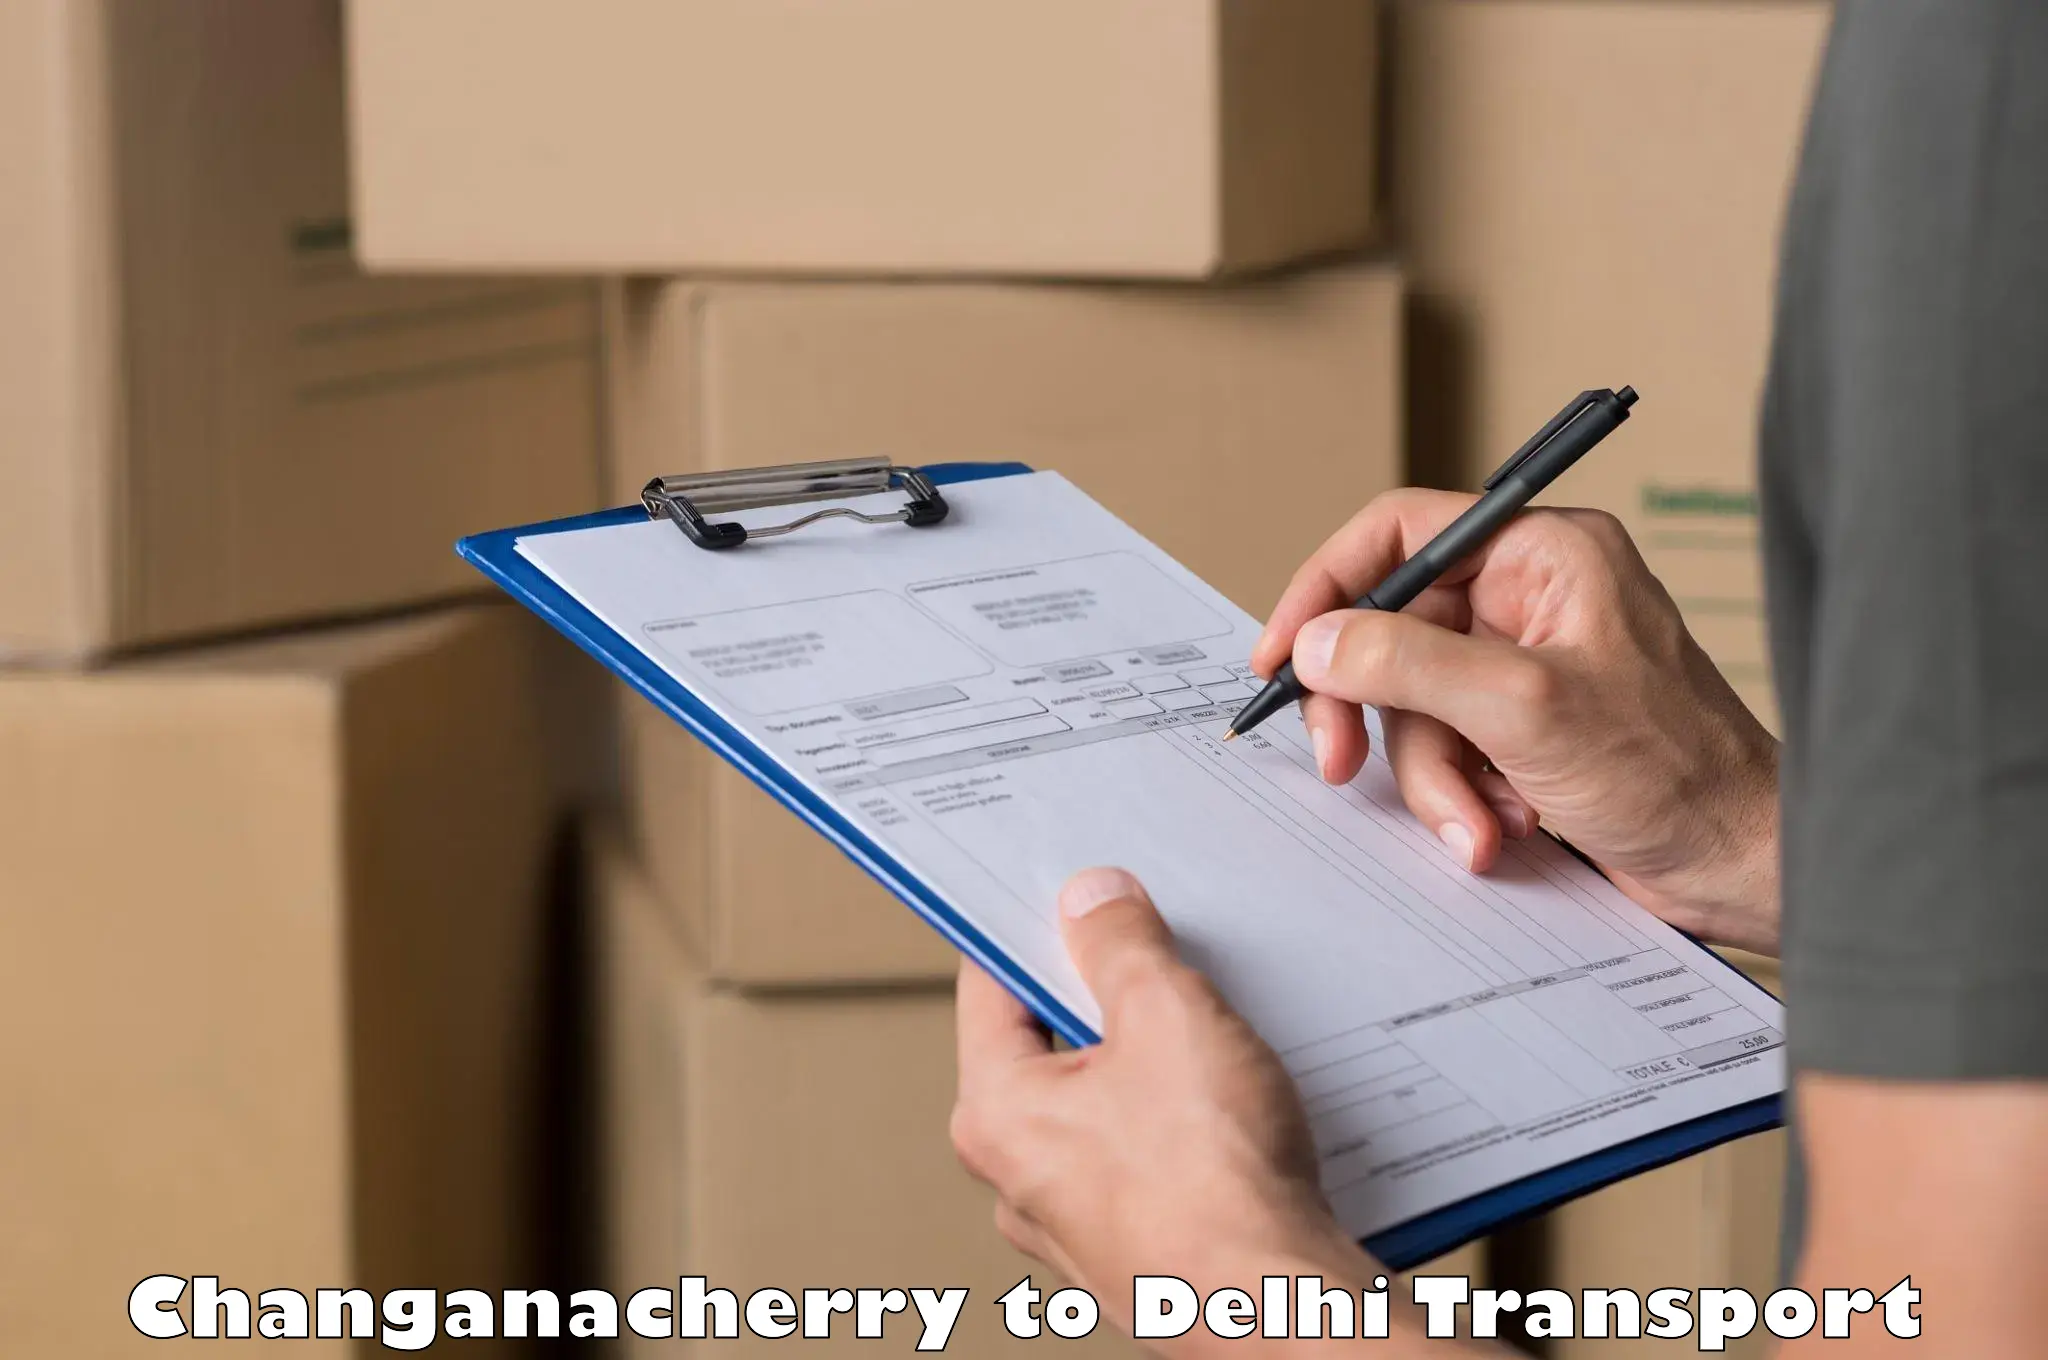 Interstate transport services Changanacherry to Delhi